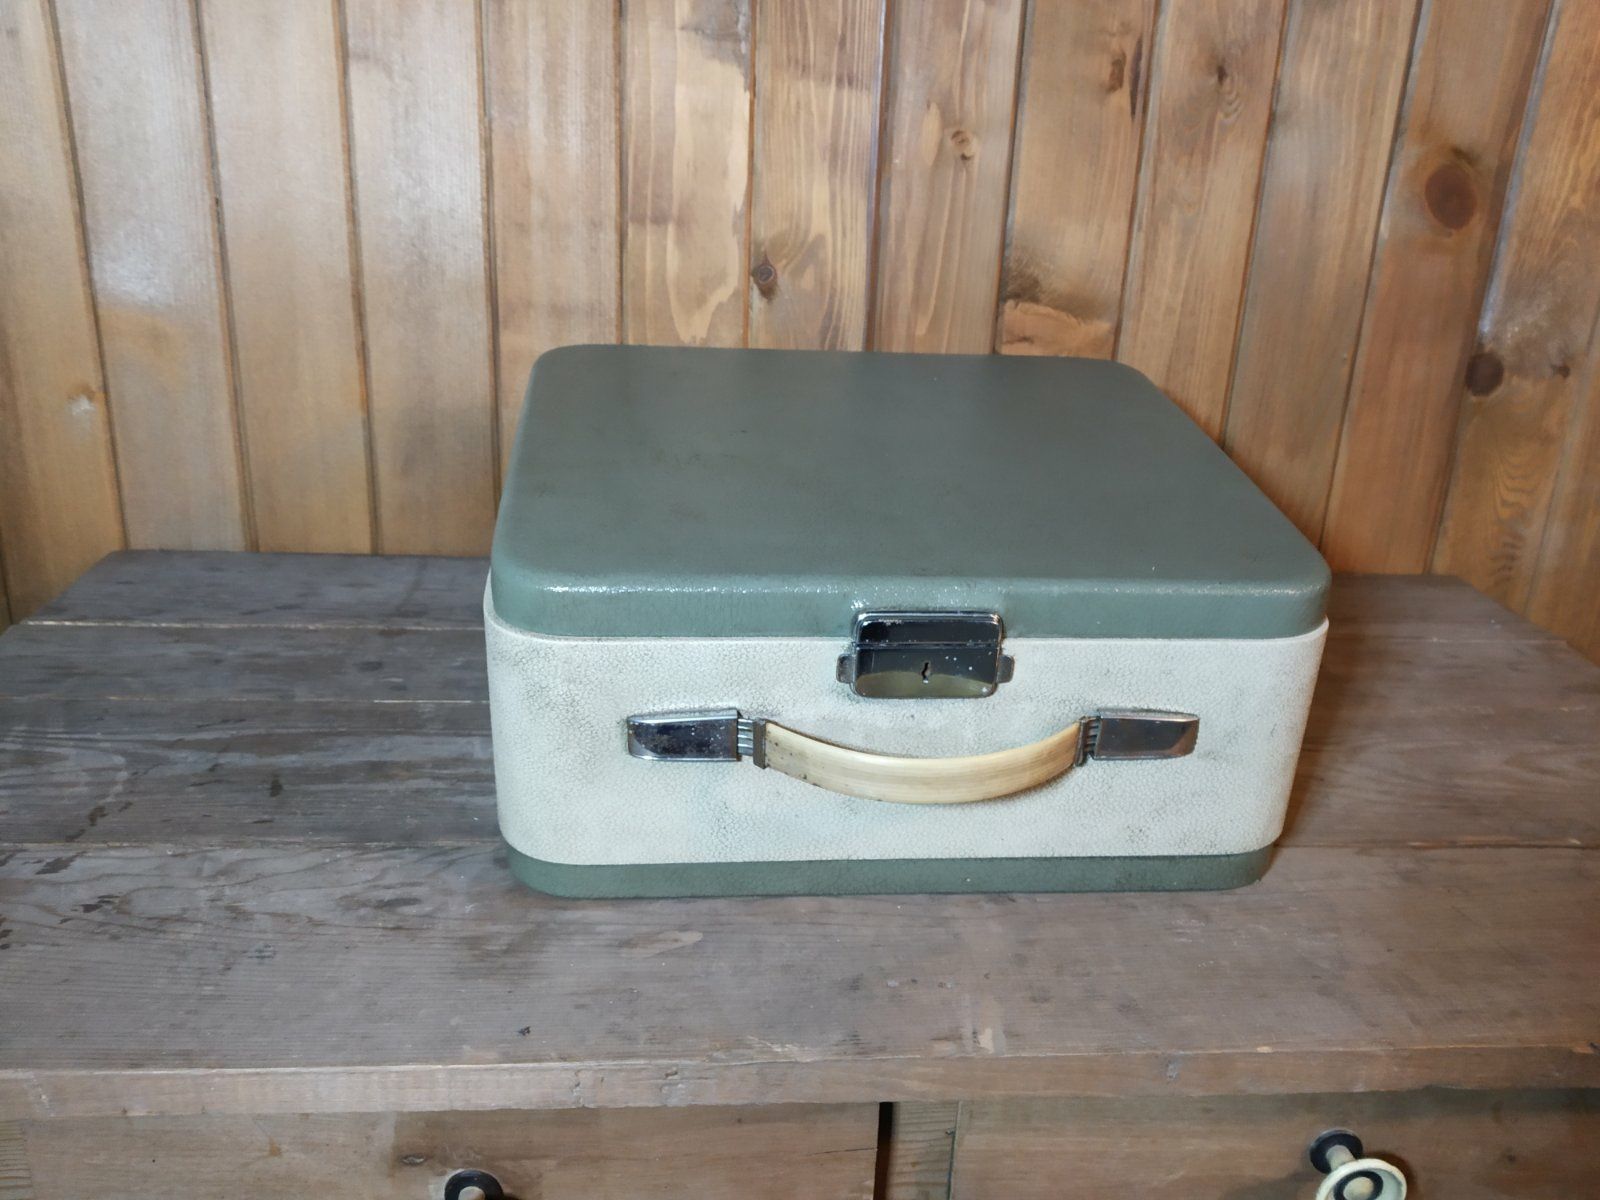 Антикварна пишеща машина Olympia с куфар